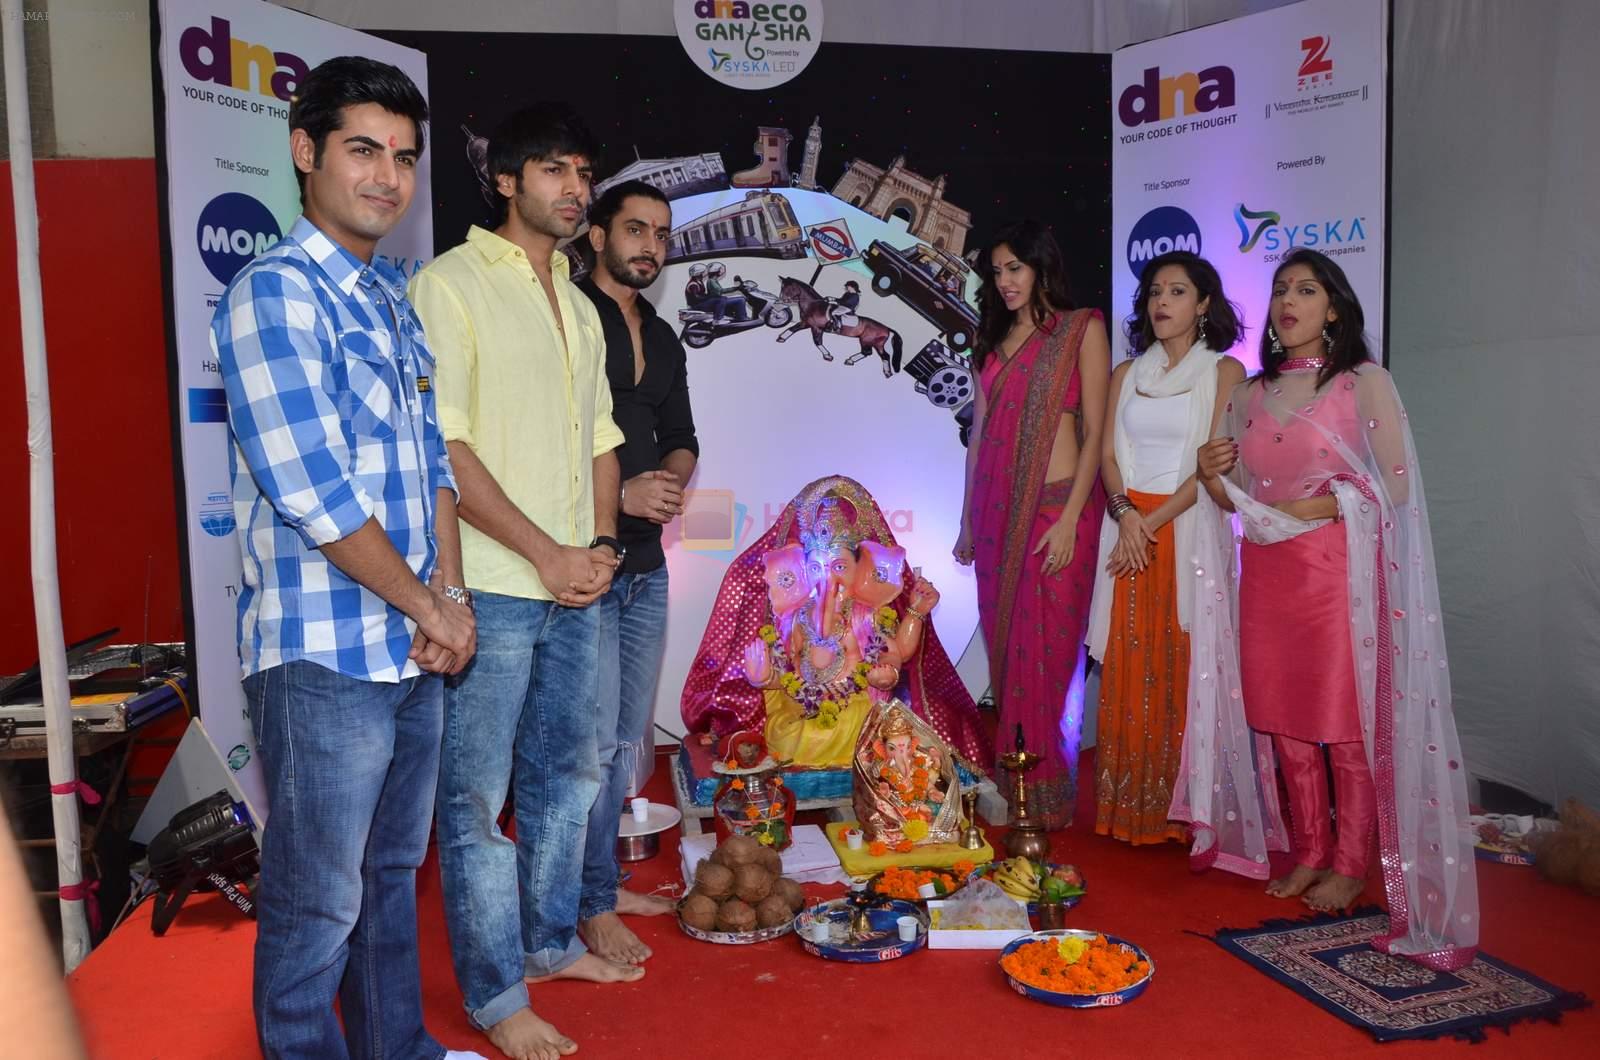 pyar ka punchnama cast at dna eco ganesha on 23rd Sept 2015